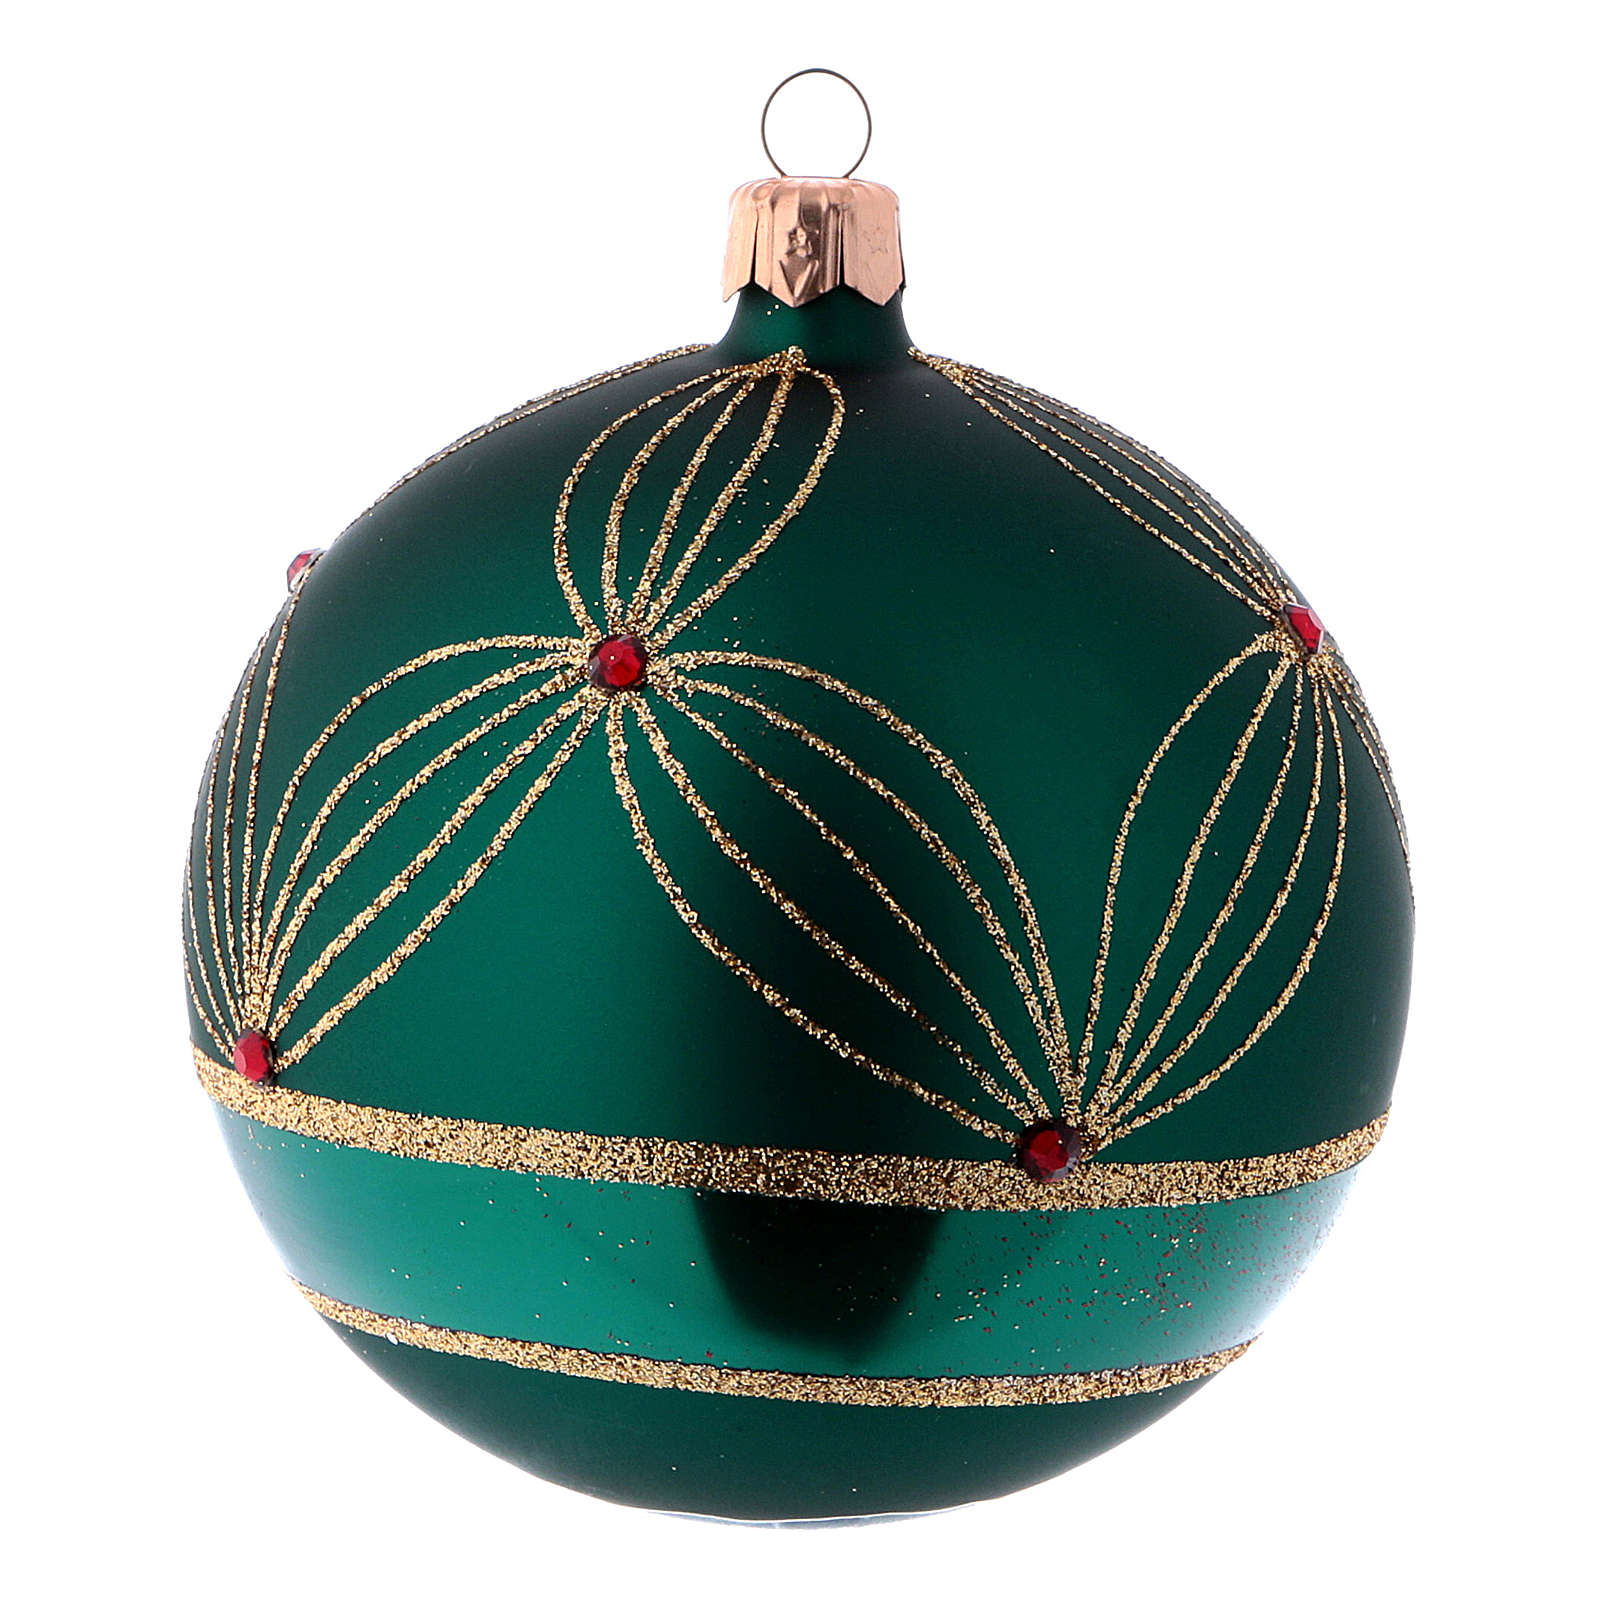 Weihnachtskugeln aus Glas 4er-Set Grundton Grün mit | Online Verfauf ...